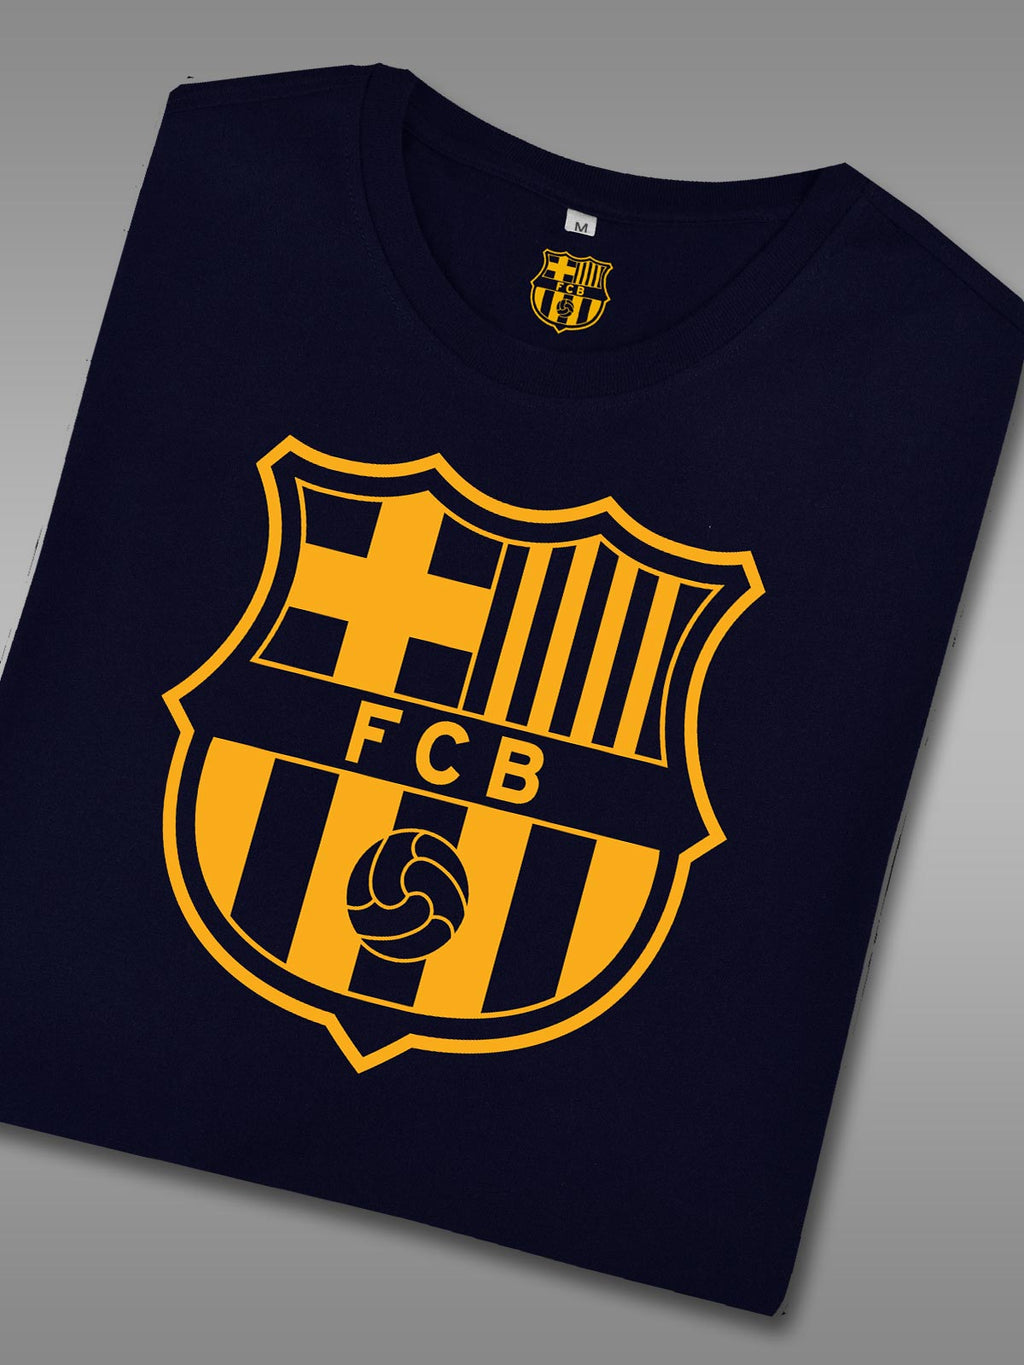 FC Barcelona Classic Crest T-Shirt